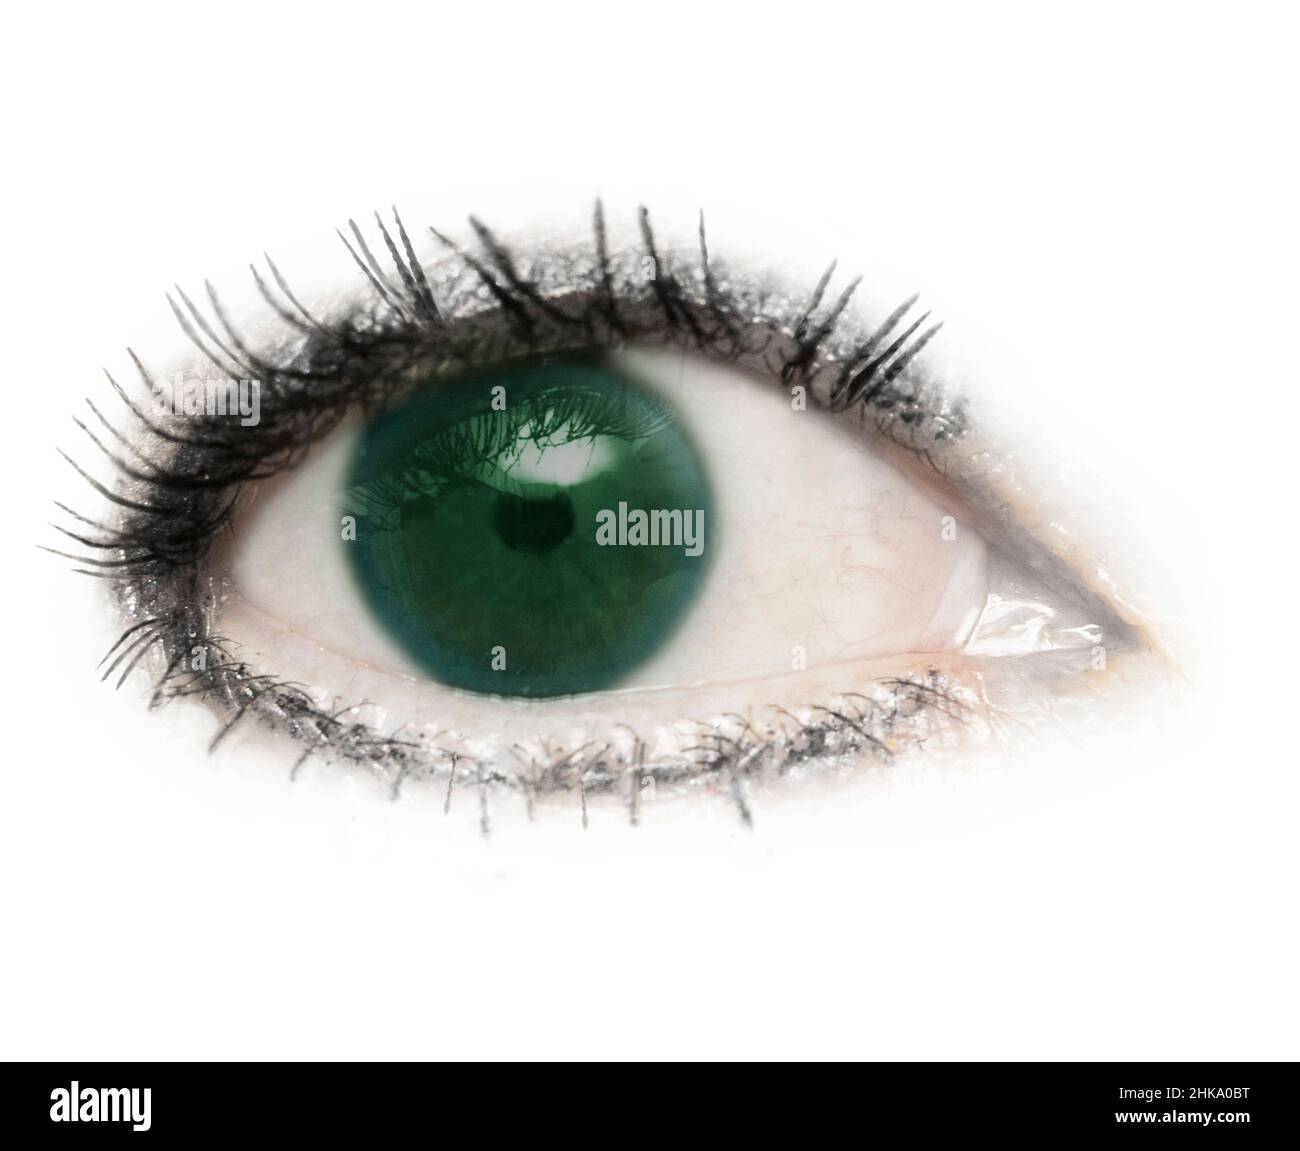 Un oeil, un globe oculaire, des yeux verts, verts, isolés avec des cils sur un fond blanc.Paupière,pupille,sclère,iris. Banque D'Images